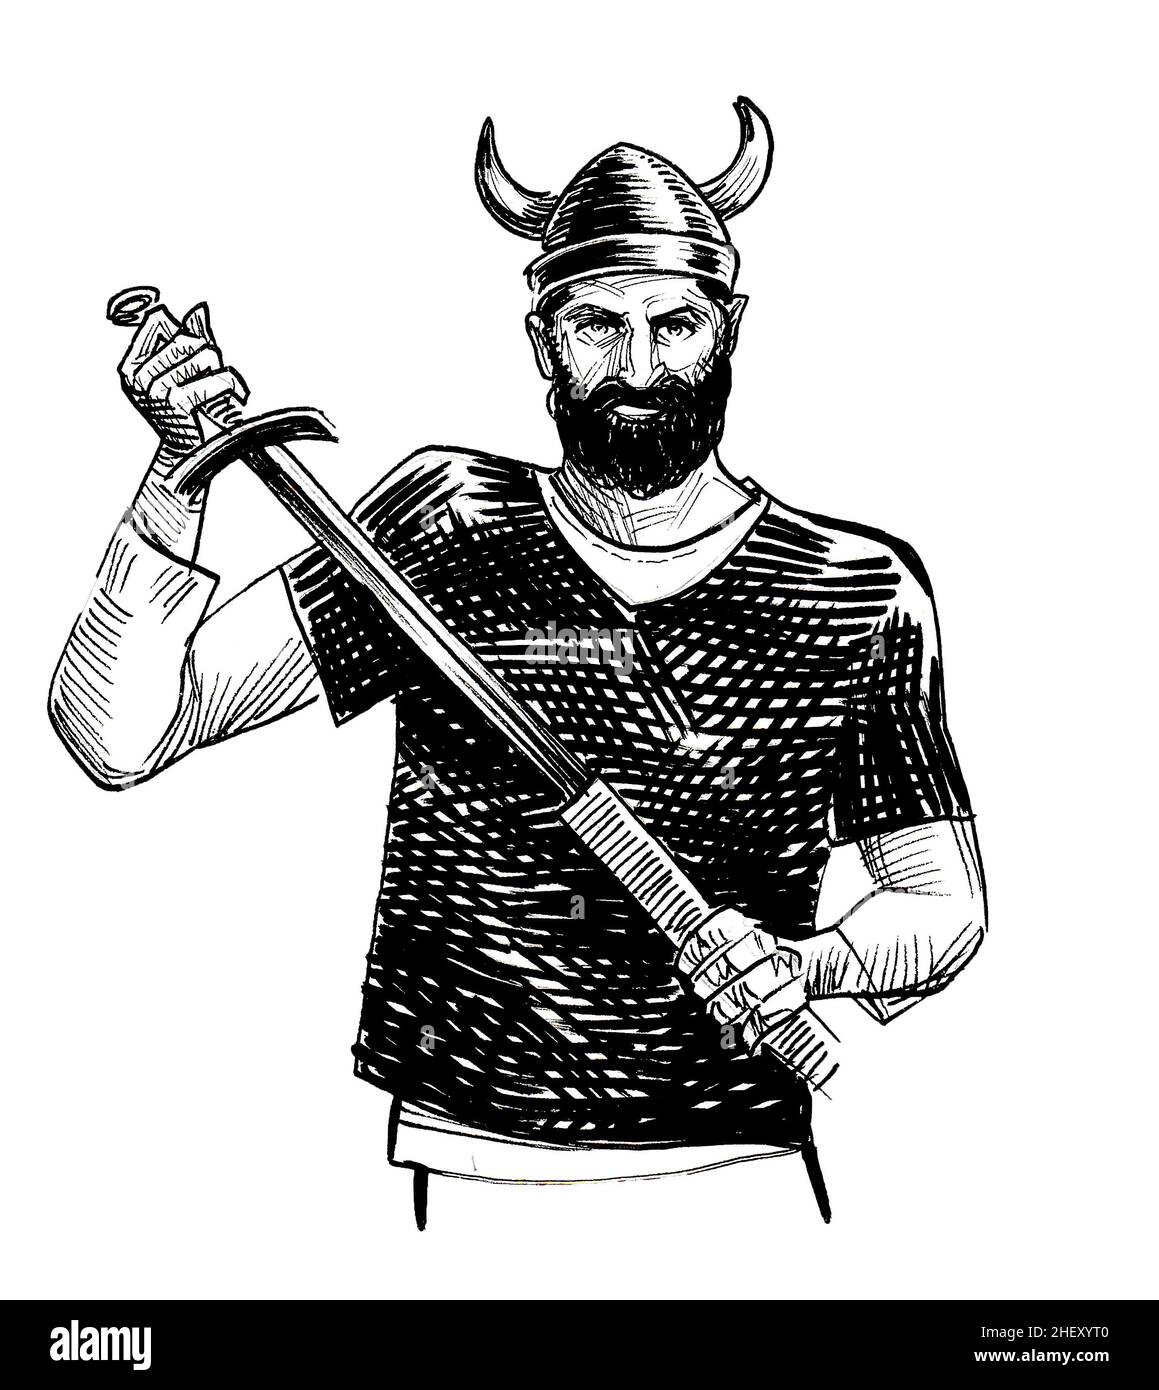 Guerrier viking en casque à cornes avec une épée.Dessin noir et blanc Banque D'Images